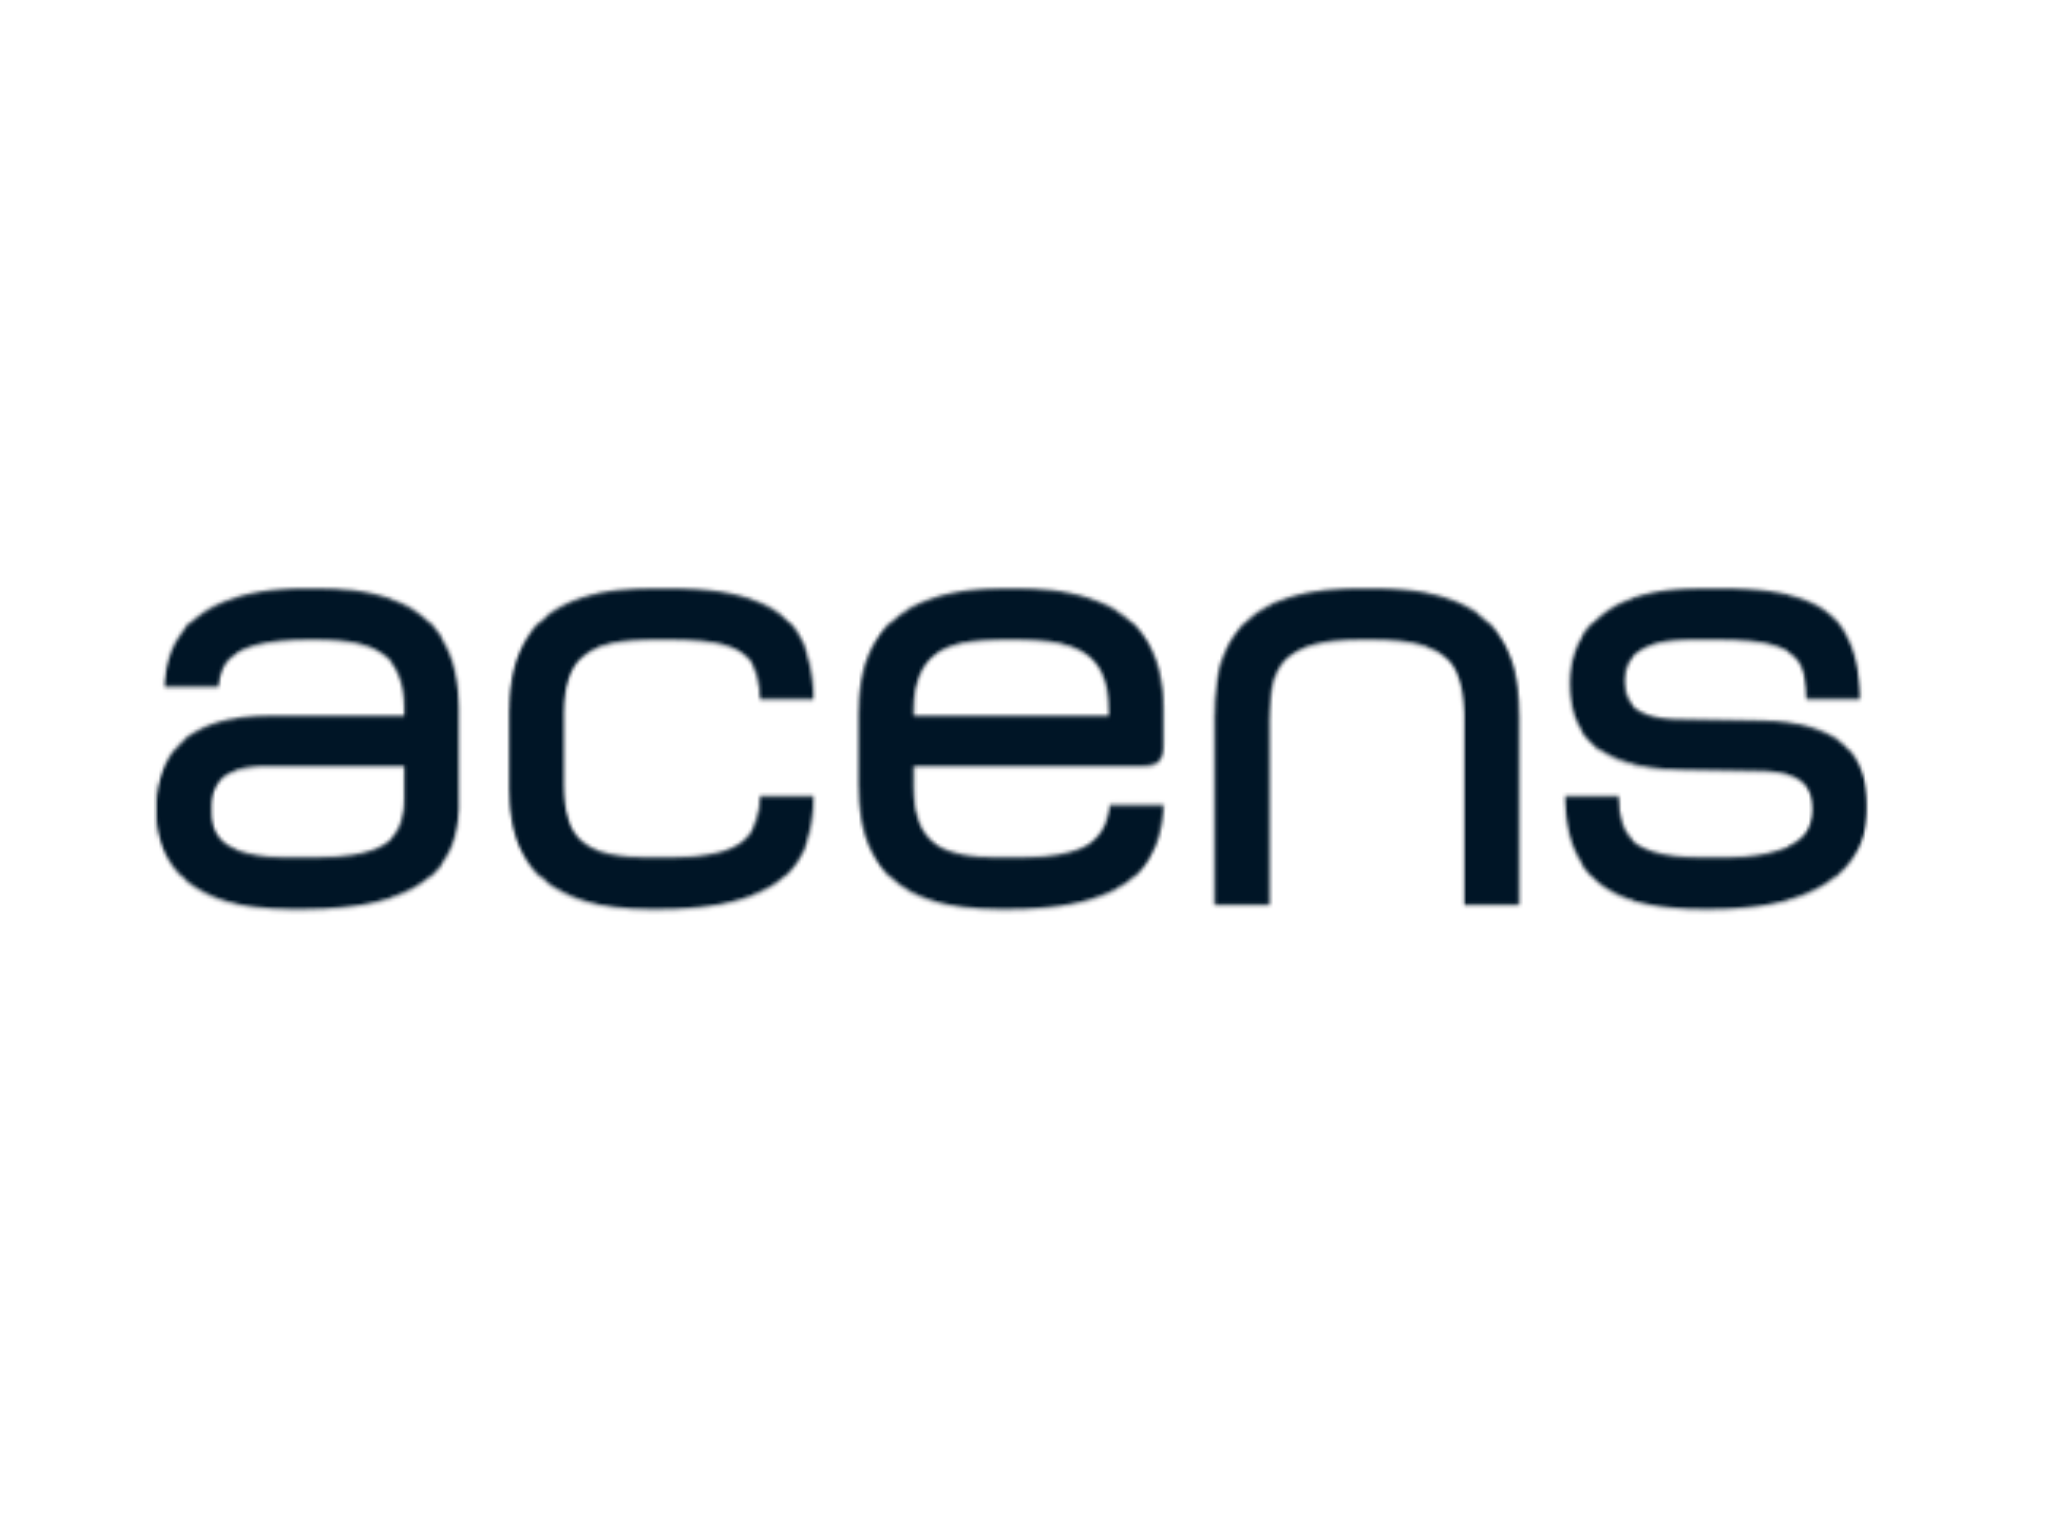 Dark Acens logo on transparent background